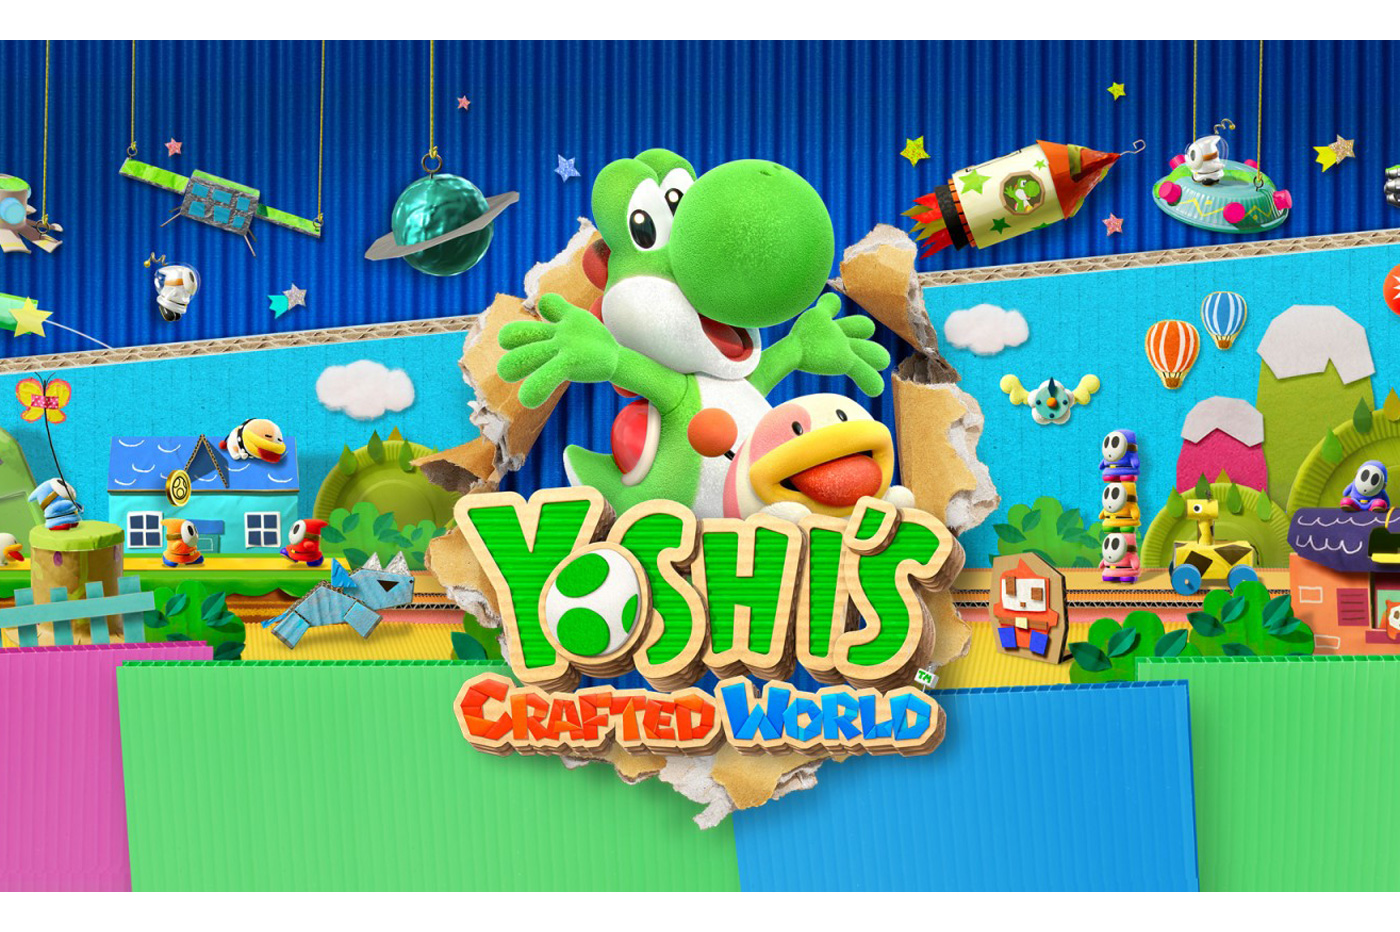 Nous avons joué au … Crafted World de Yoshi sur Nintendo Switch